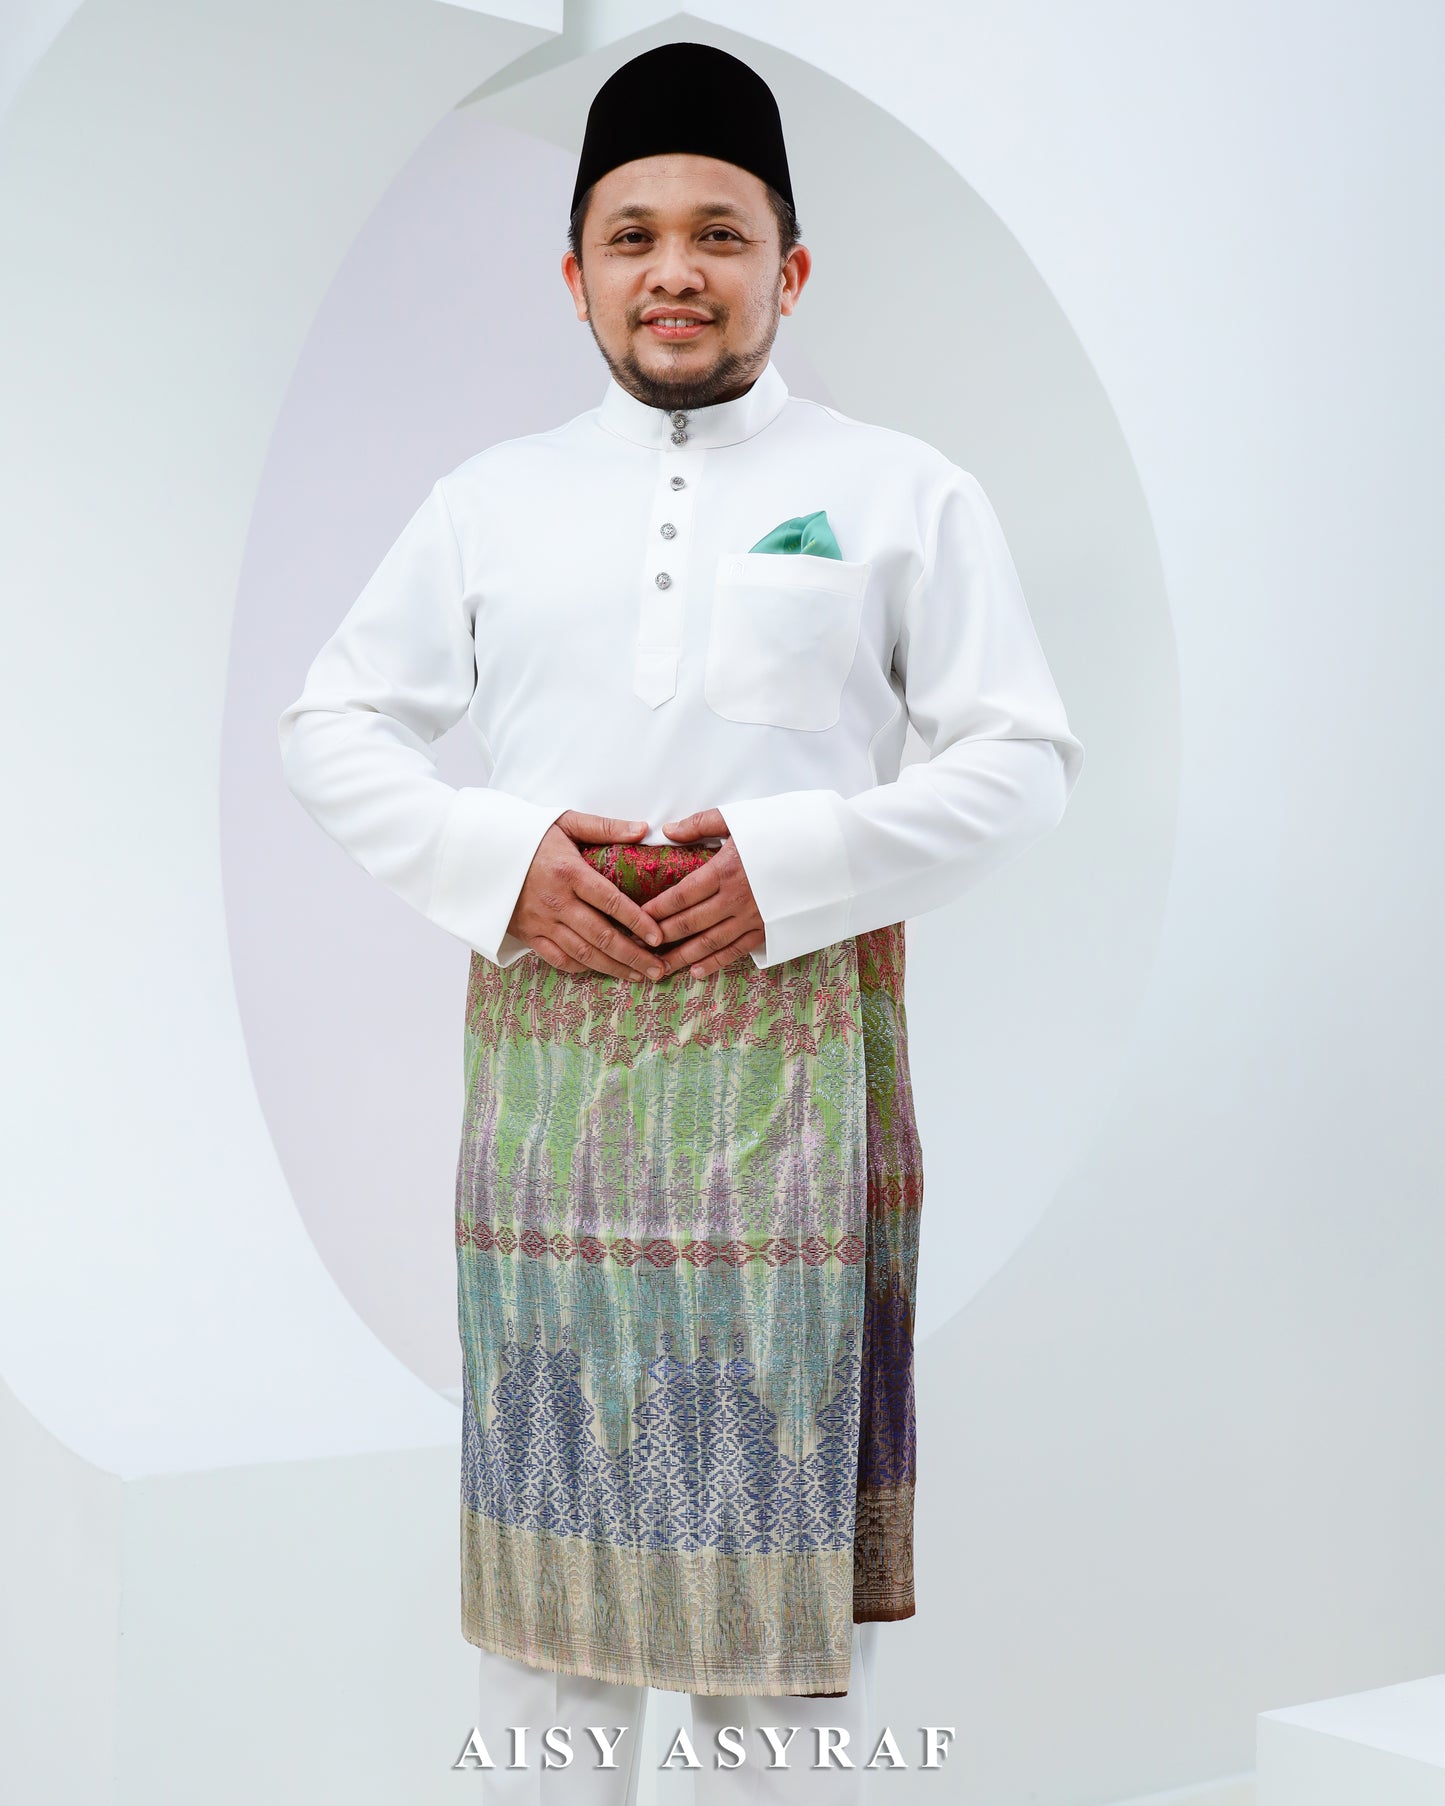 Baju Melayu Haseki - White